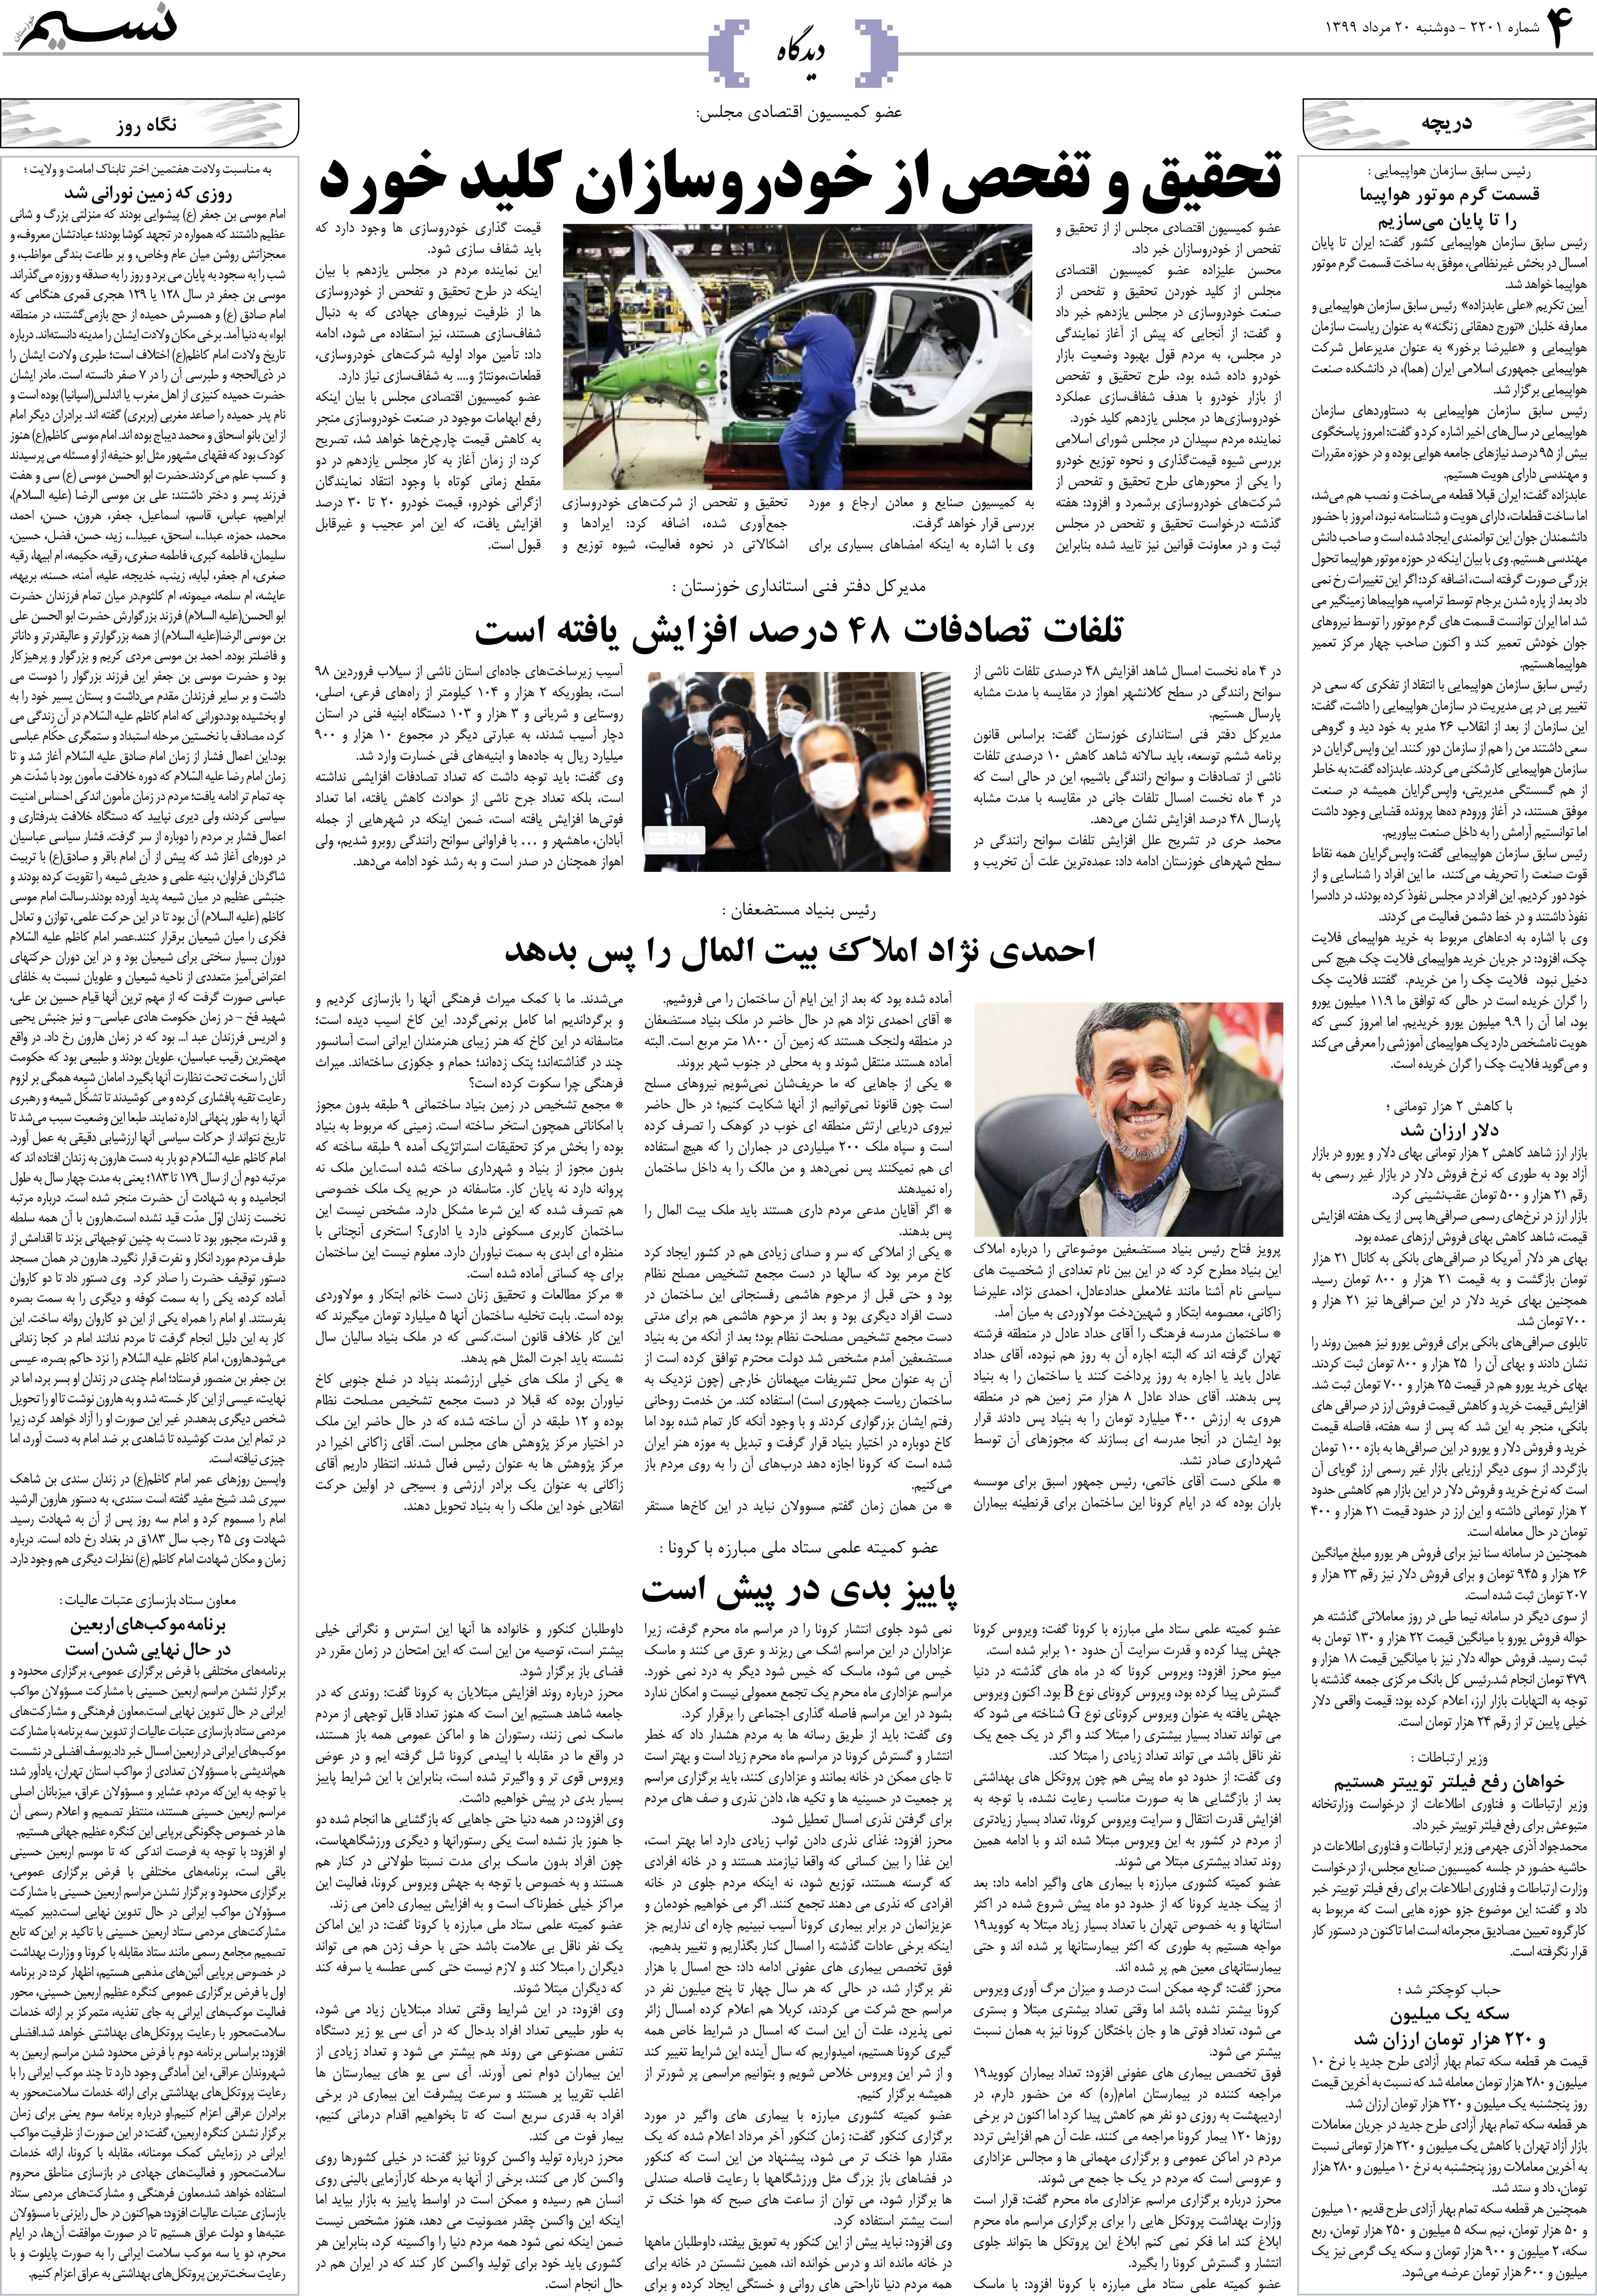 صفحه دیدگاه روزنامه نسیم شماره 2201